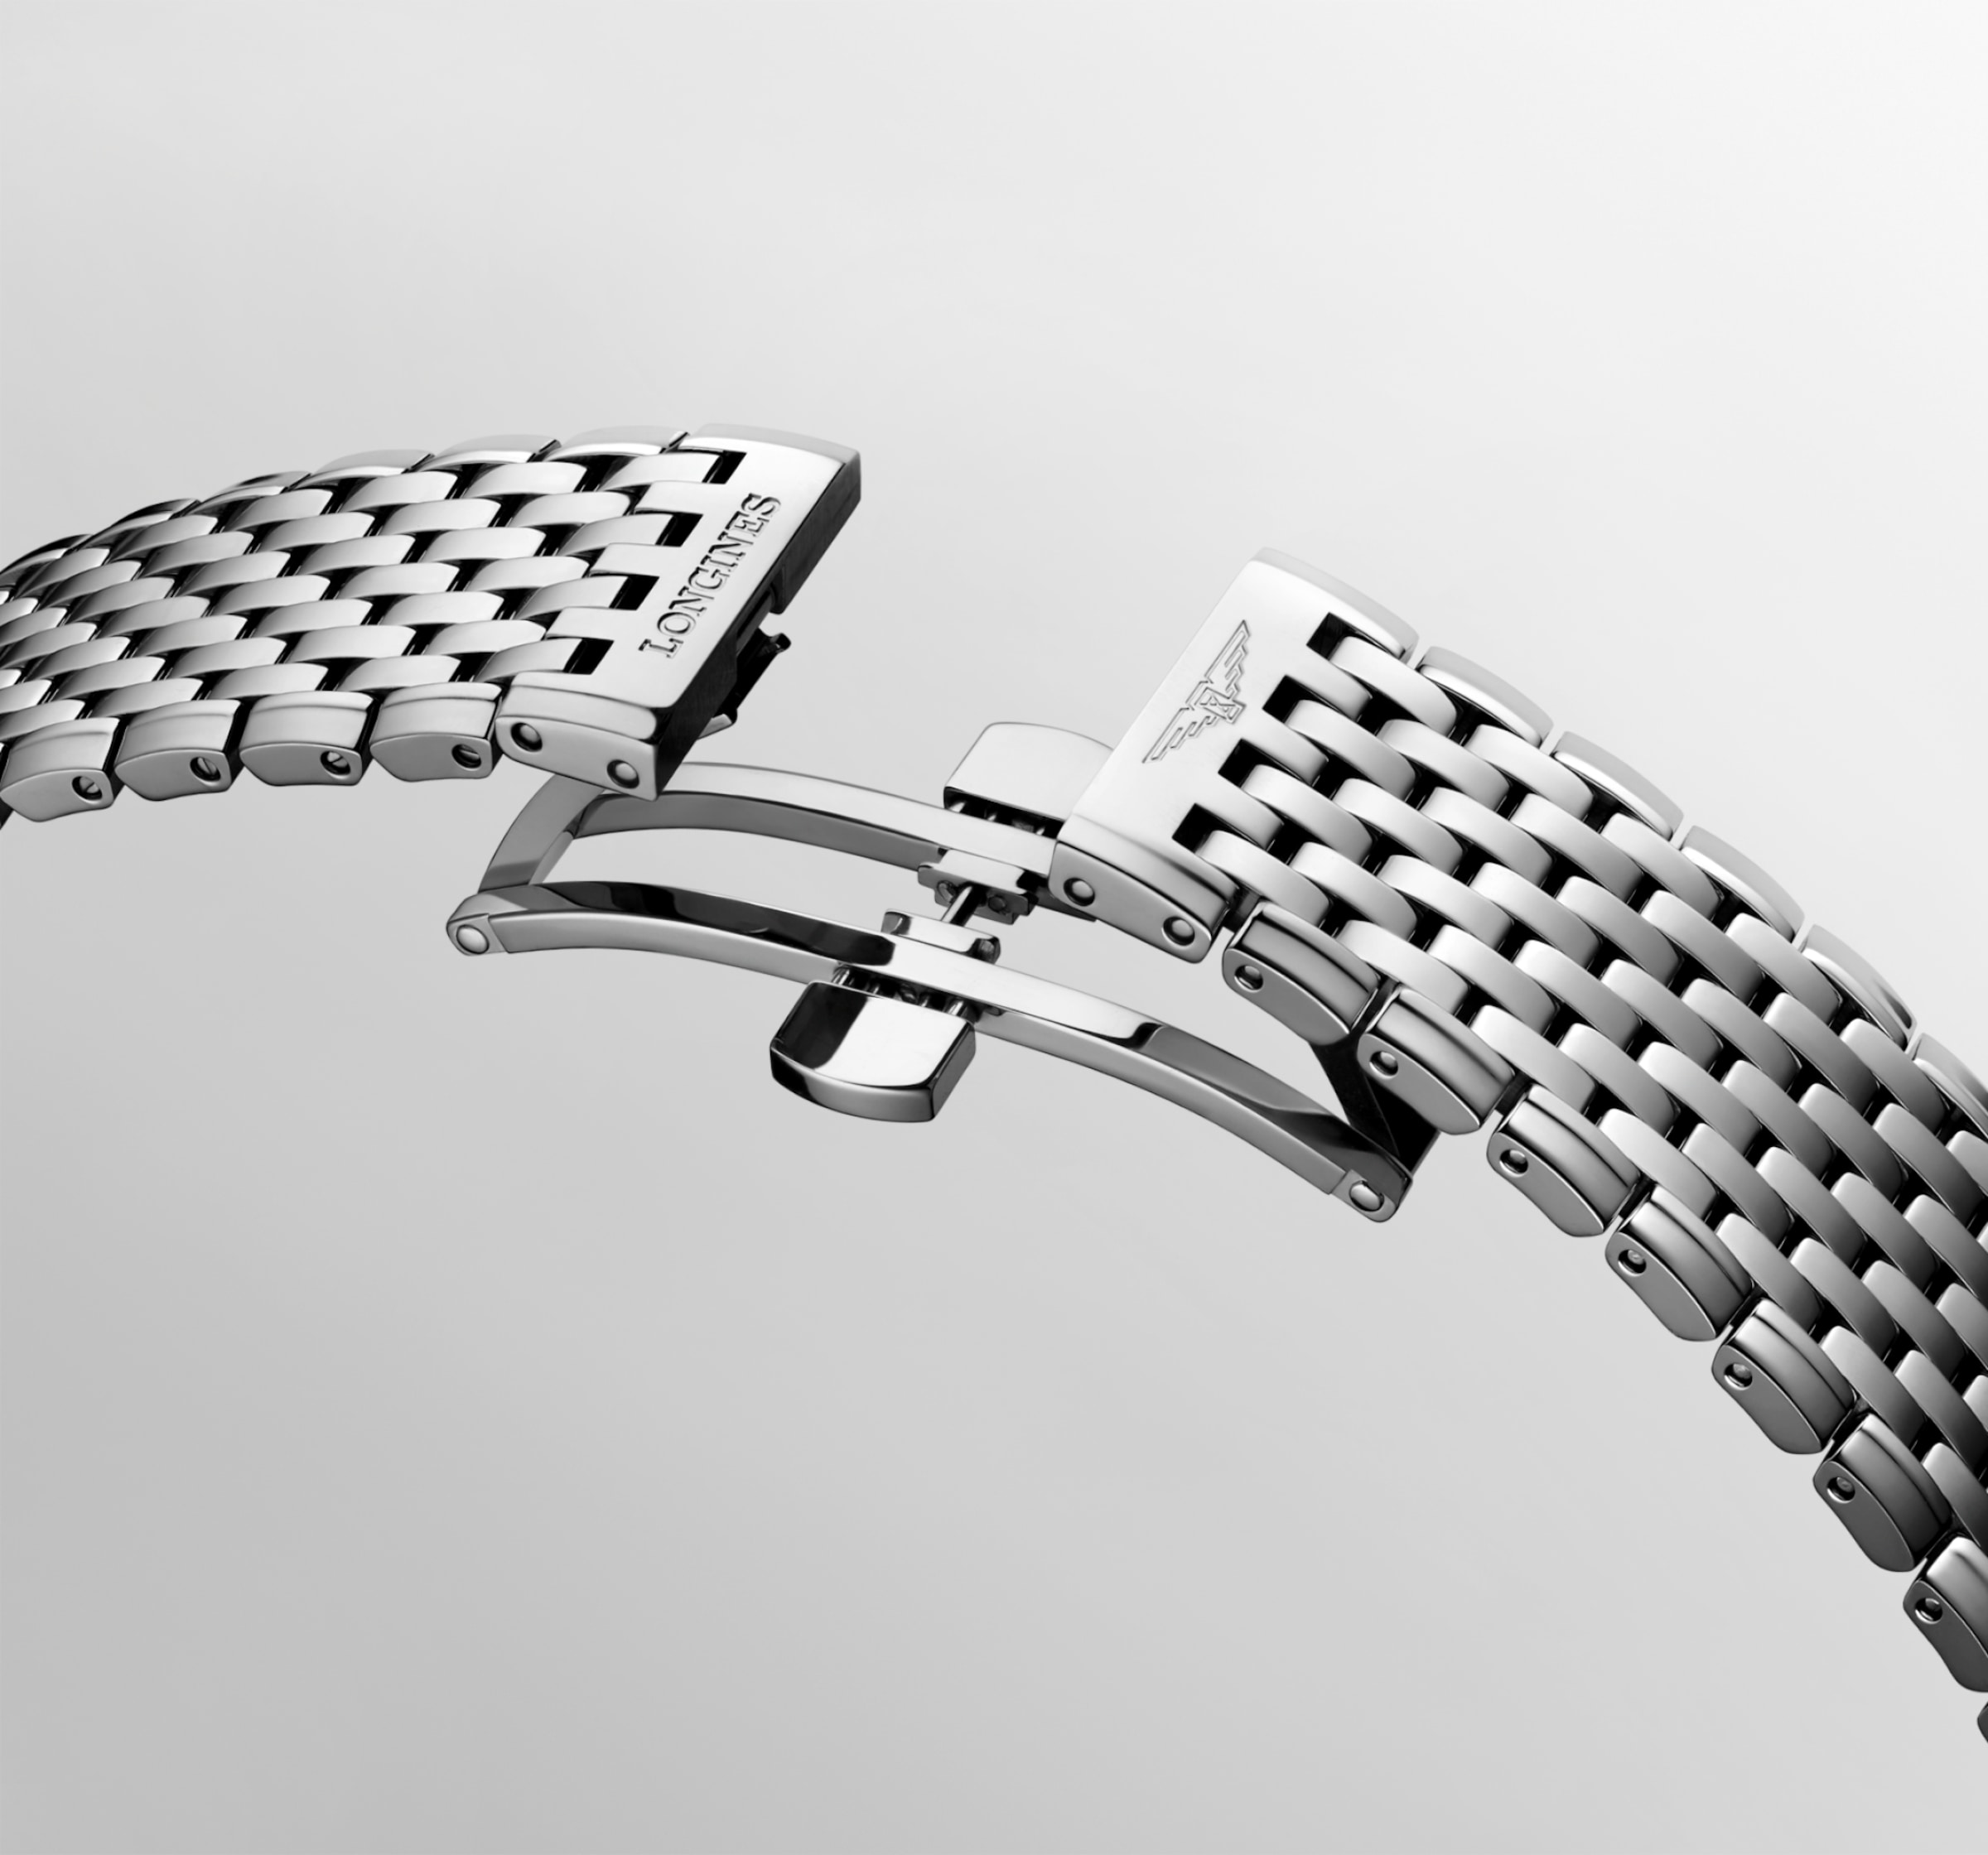 Longines LA GRANDE CLASSIQUE DE LONGINES Quartz Stainless steel Watch - L4.866.4.11.6